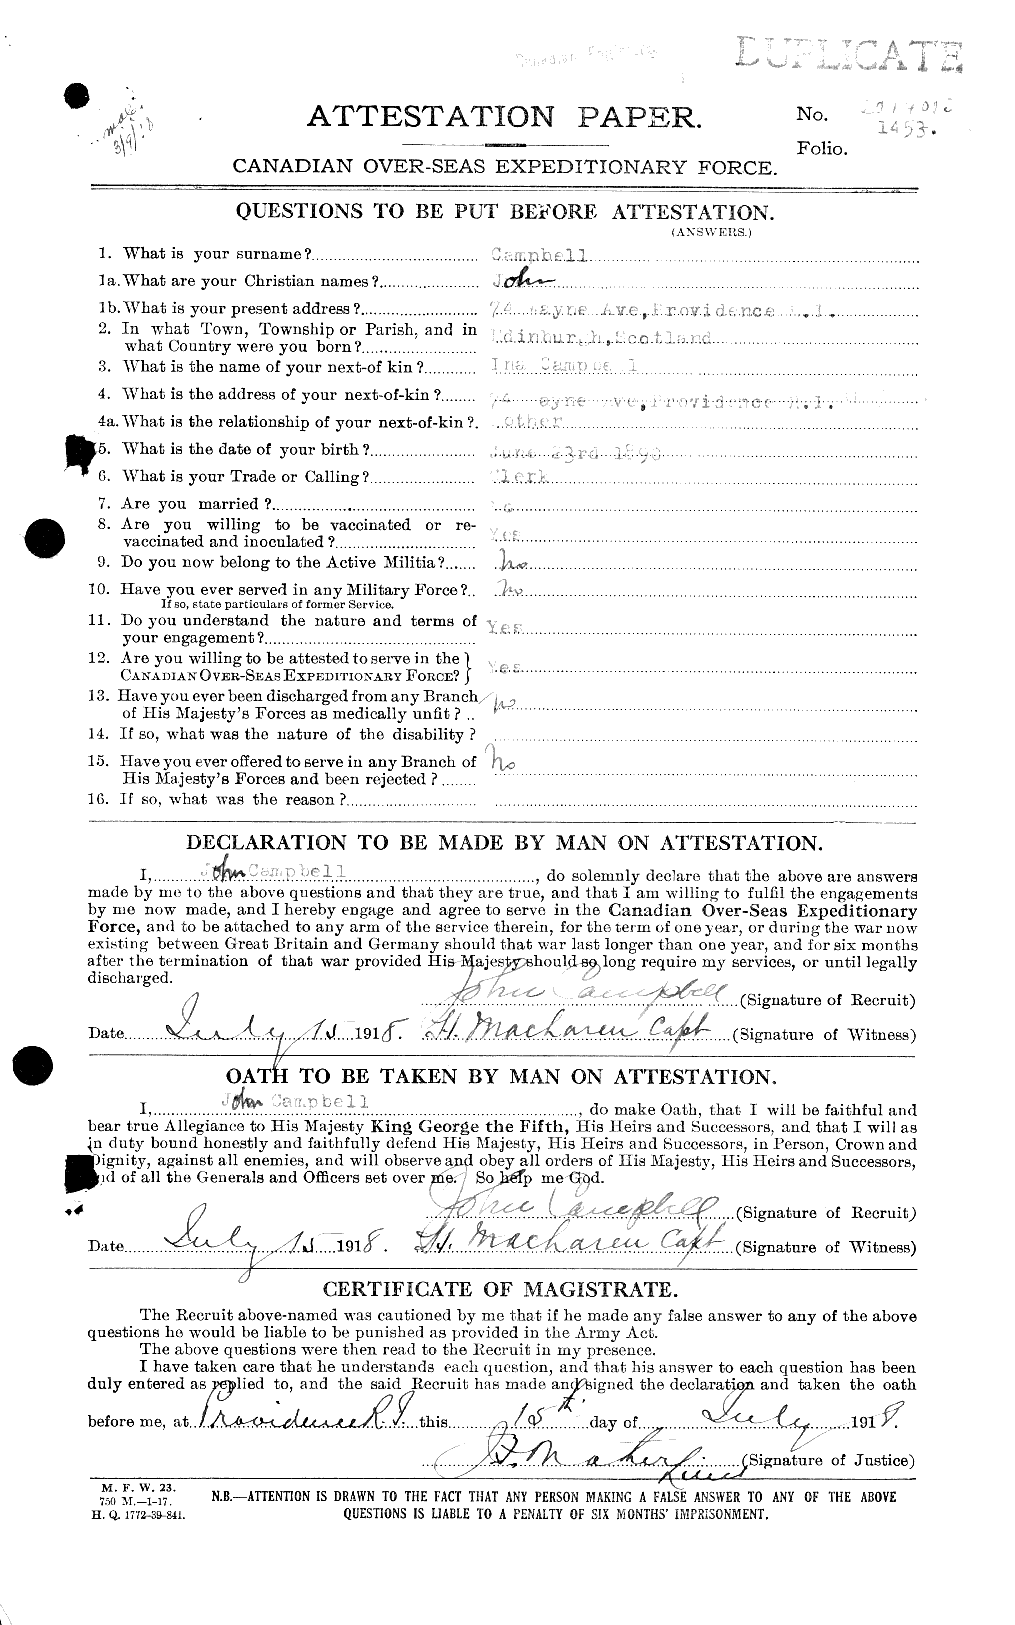 Dossiers du Personnel de la Première Guerre mondiale - CEC 008478a